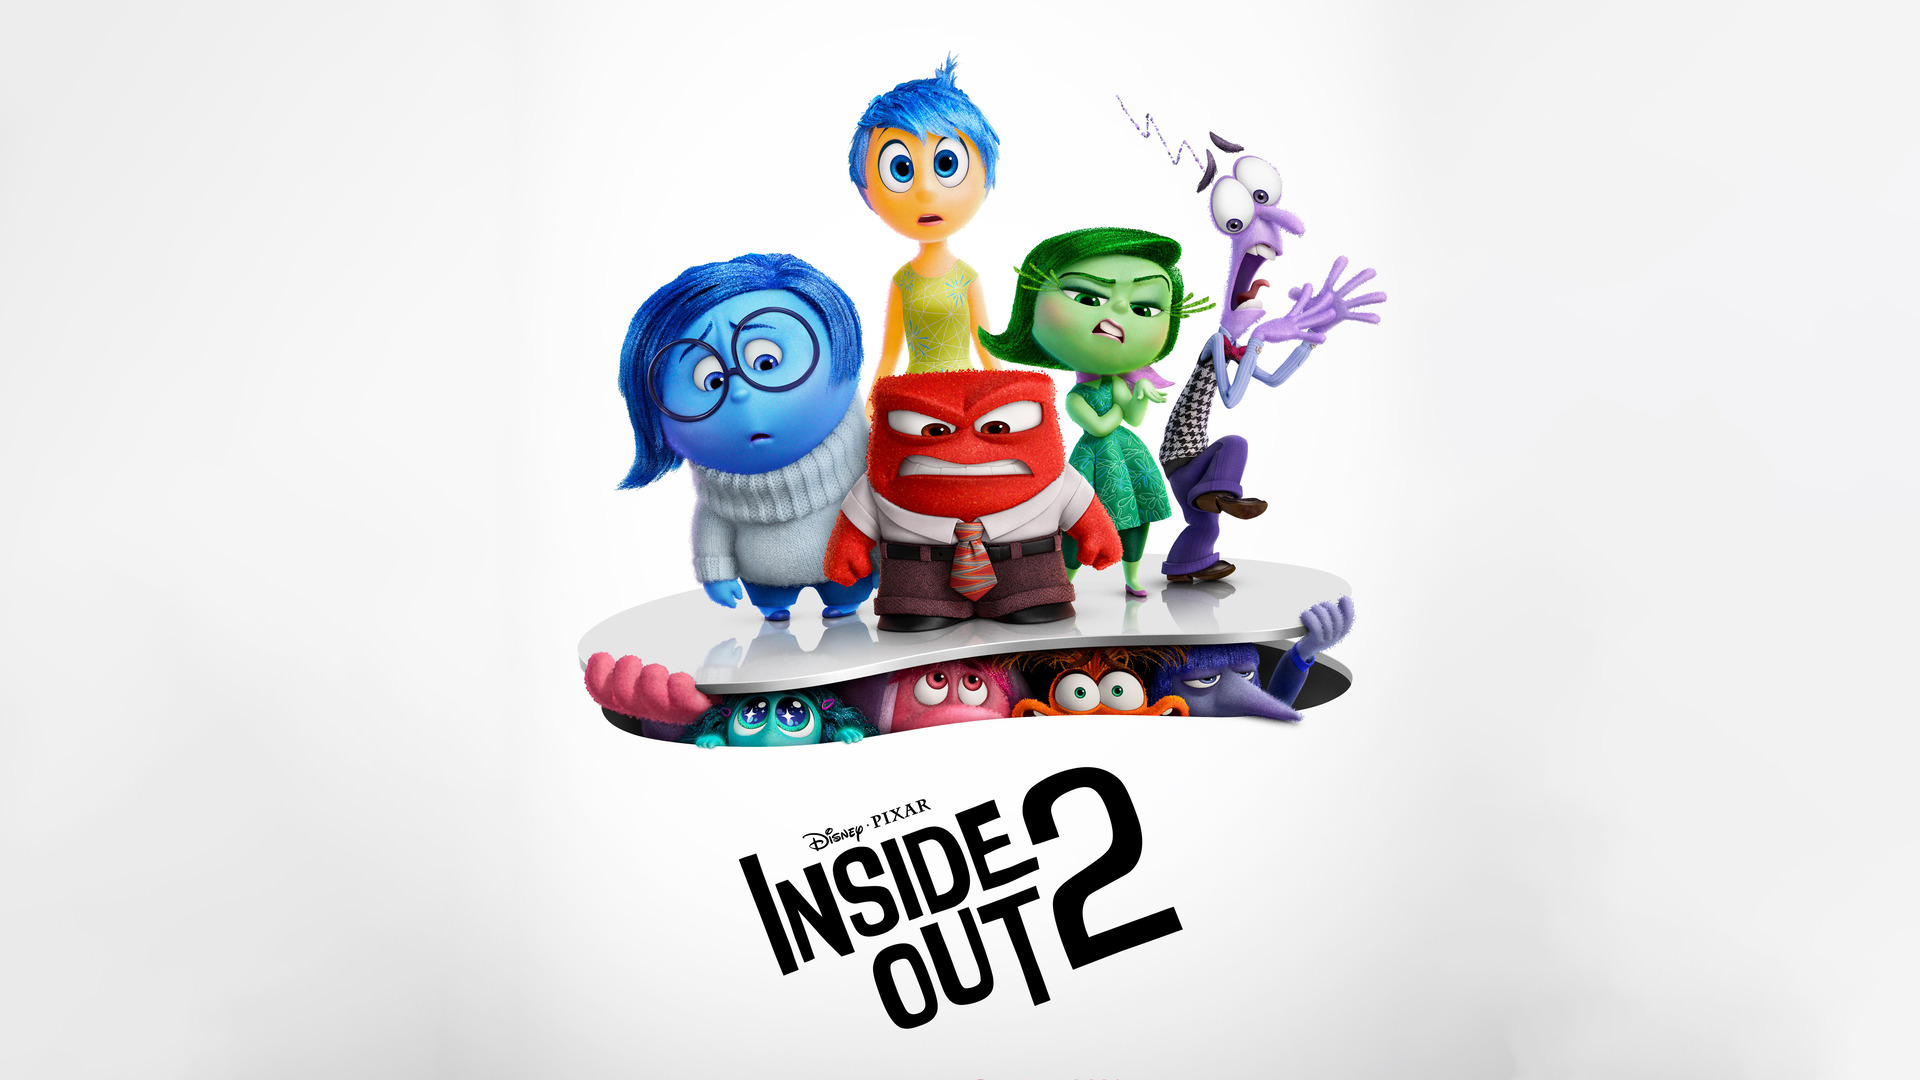 دومین تریلر انیمیشن Inside Out 2 با محوریت نمایش سه احساس جدید رایلی